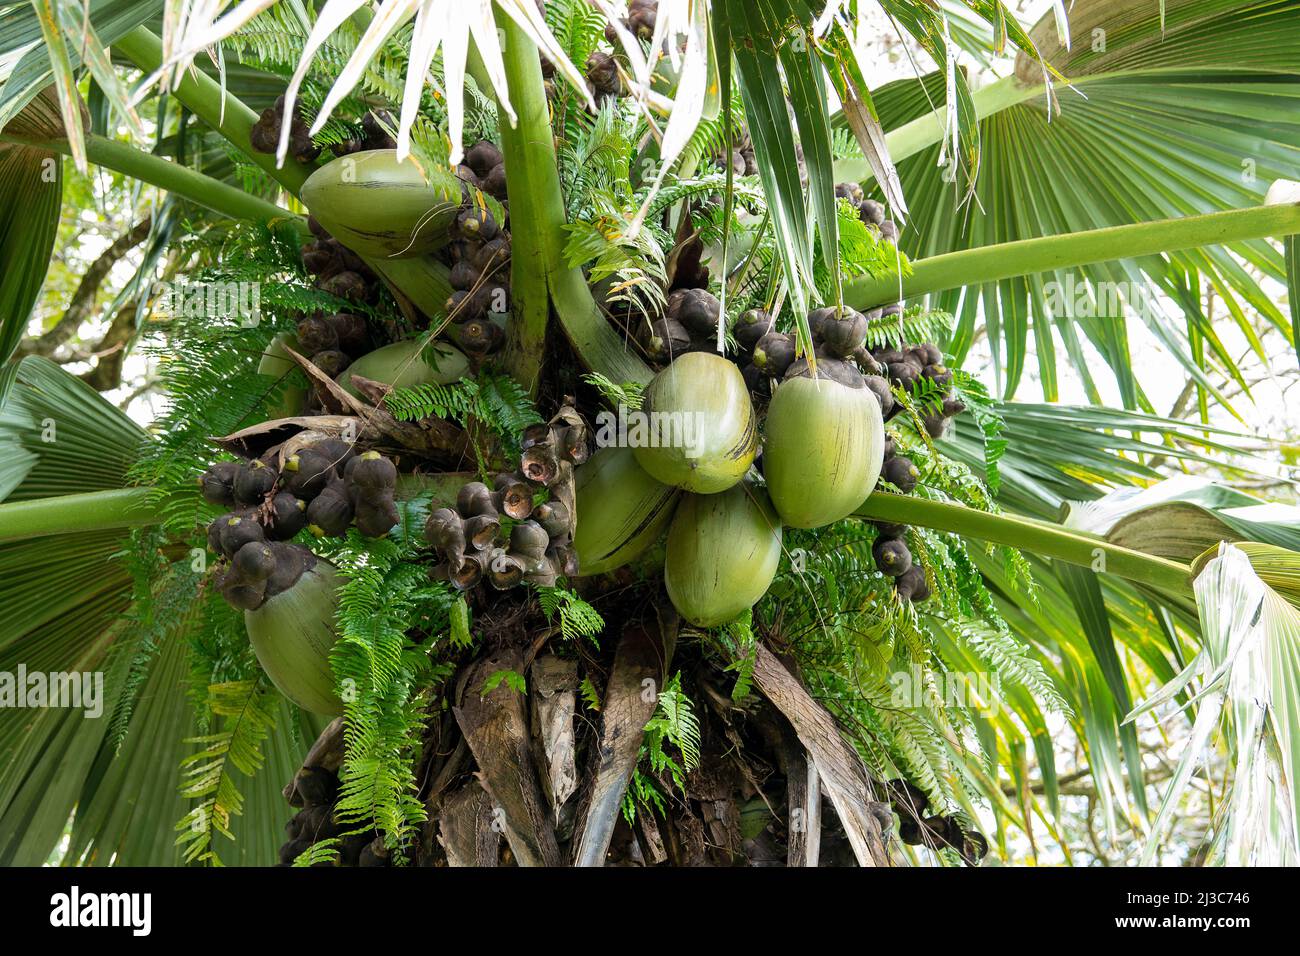 coco de mer, (Lodoicea maldivica), auch Double Coconut genannt, einheimische Palme der Seychellen Stockfoto